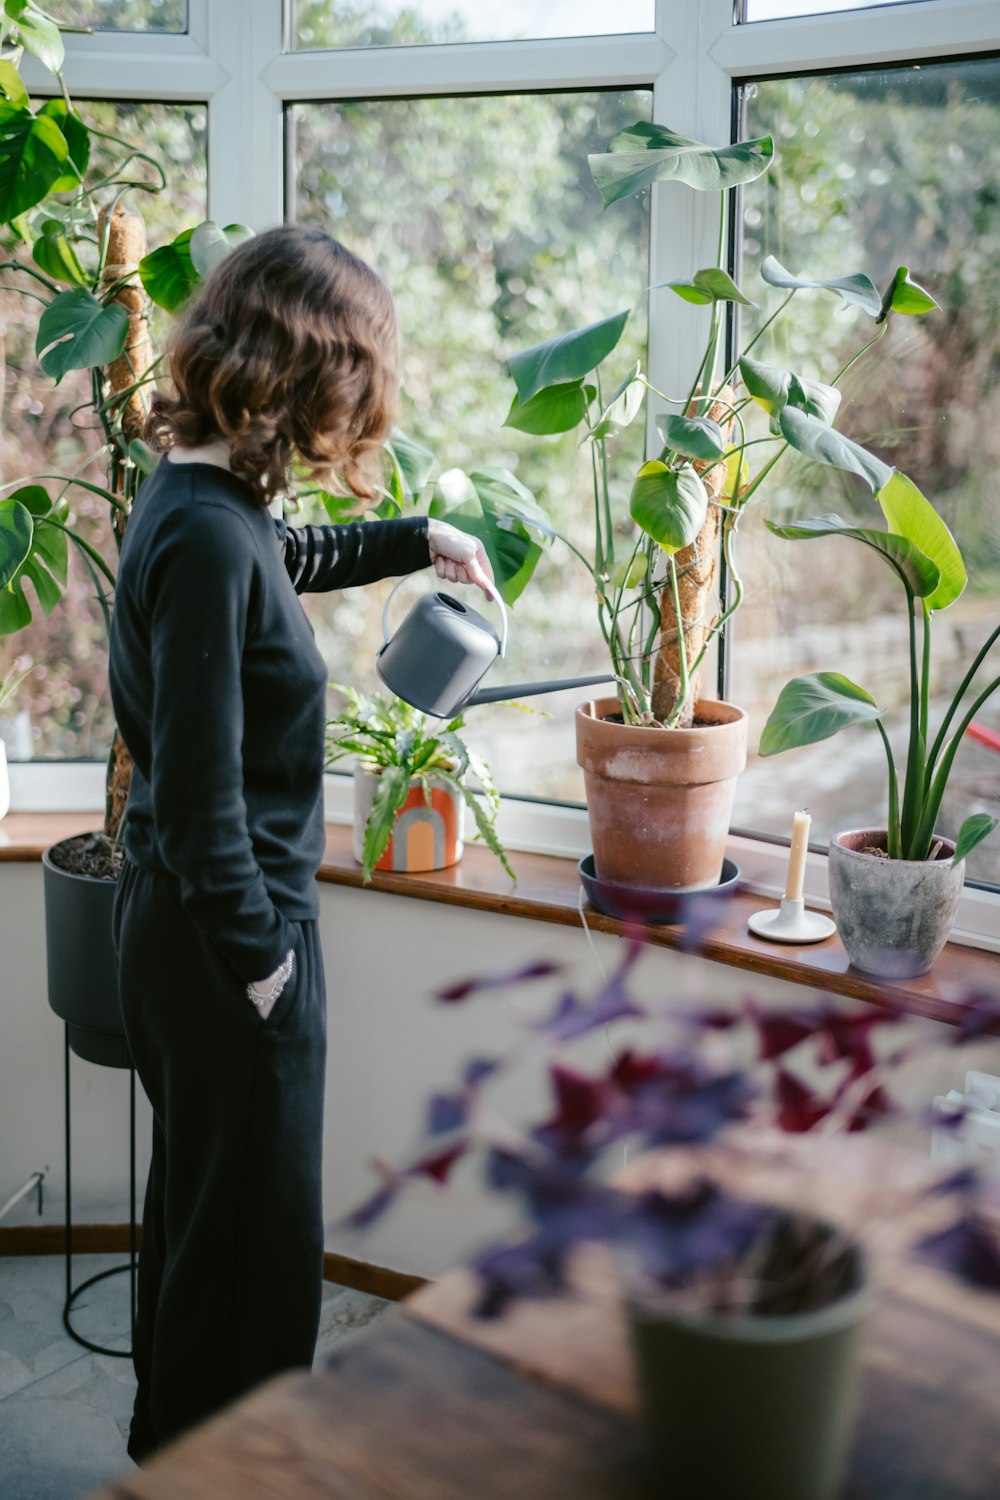 a woman watering plants in a window sill